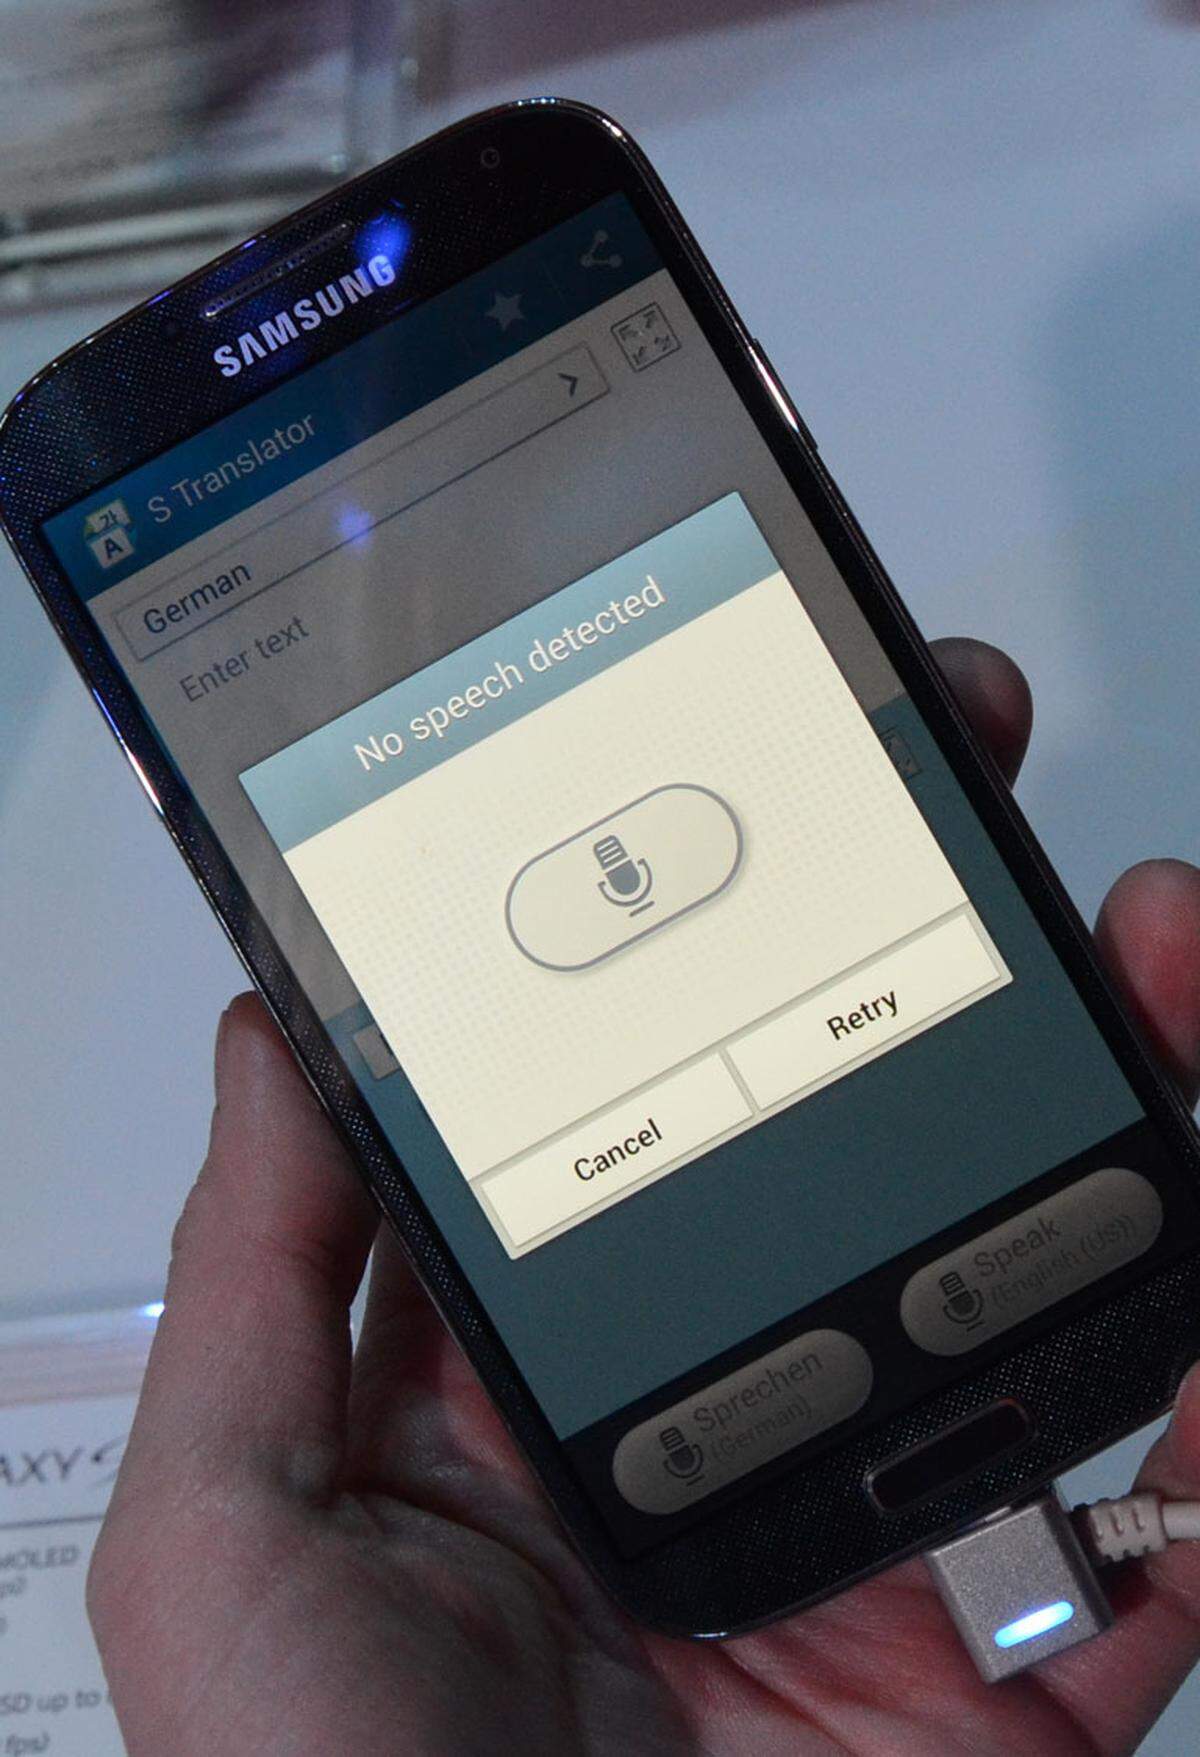 Von den vielen Apps, mit denen Samsung Android garniert, ist der "S Translator" bestimmt die praktischste. Sie sorgt dafür, dass fremdsprachige Texte übersetzt werden und zwar sowohl bei gesprochenem, als auch bei geschriebenen Texten. In lauten Umgebungen muss das Mikrofon sehr nahe vor den Mund gehalten werden - oder man tippt den Text einfach ein.